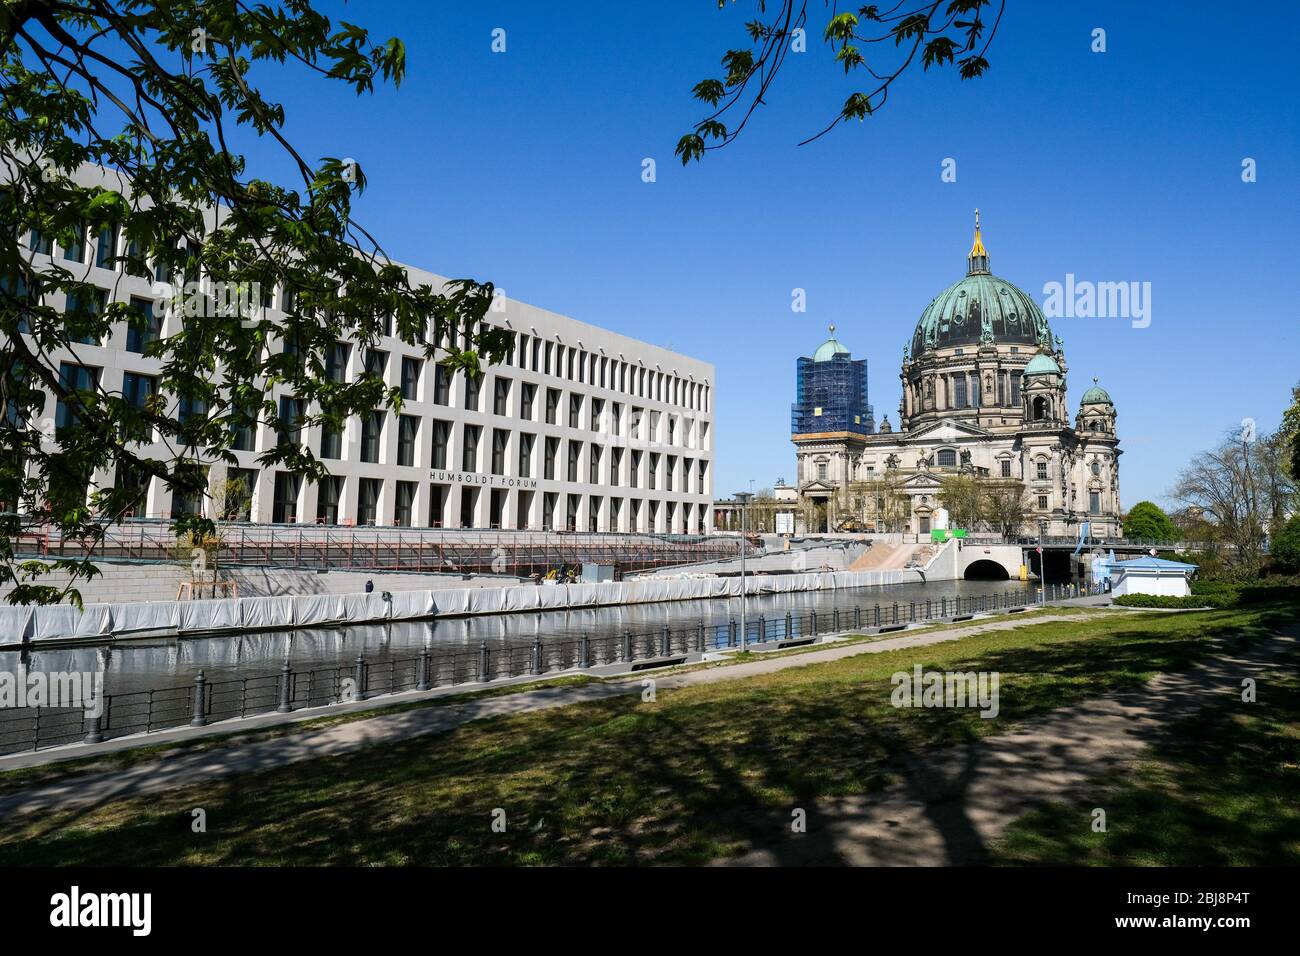 Berlin, Deutschland. April 2020. Das Humboldt-Forum (l) und der Dom in der Mitte. Quelle: Jens Kalaene/dpa-Zentralbild/ZB/dpa/Alamy Live News Stockfoto